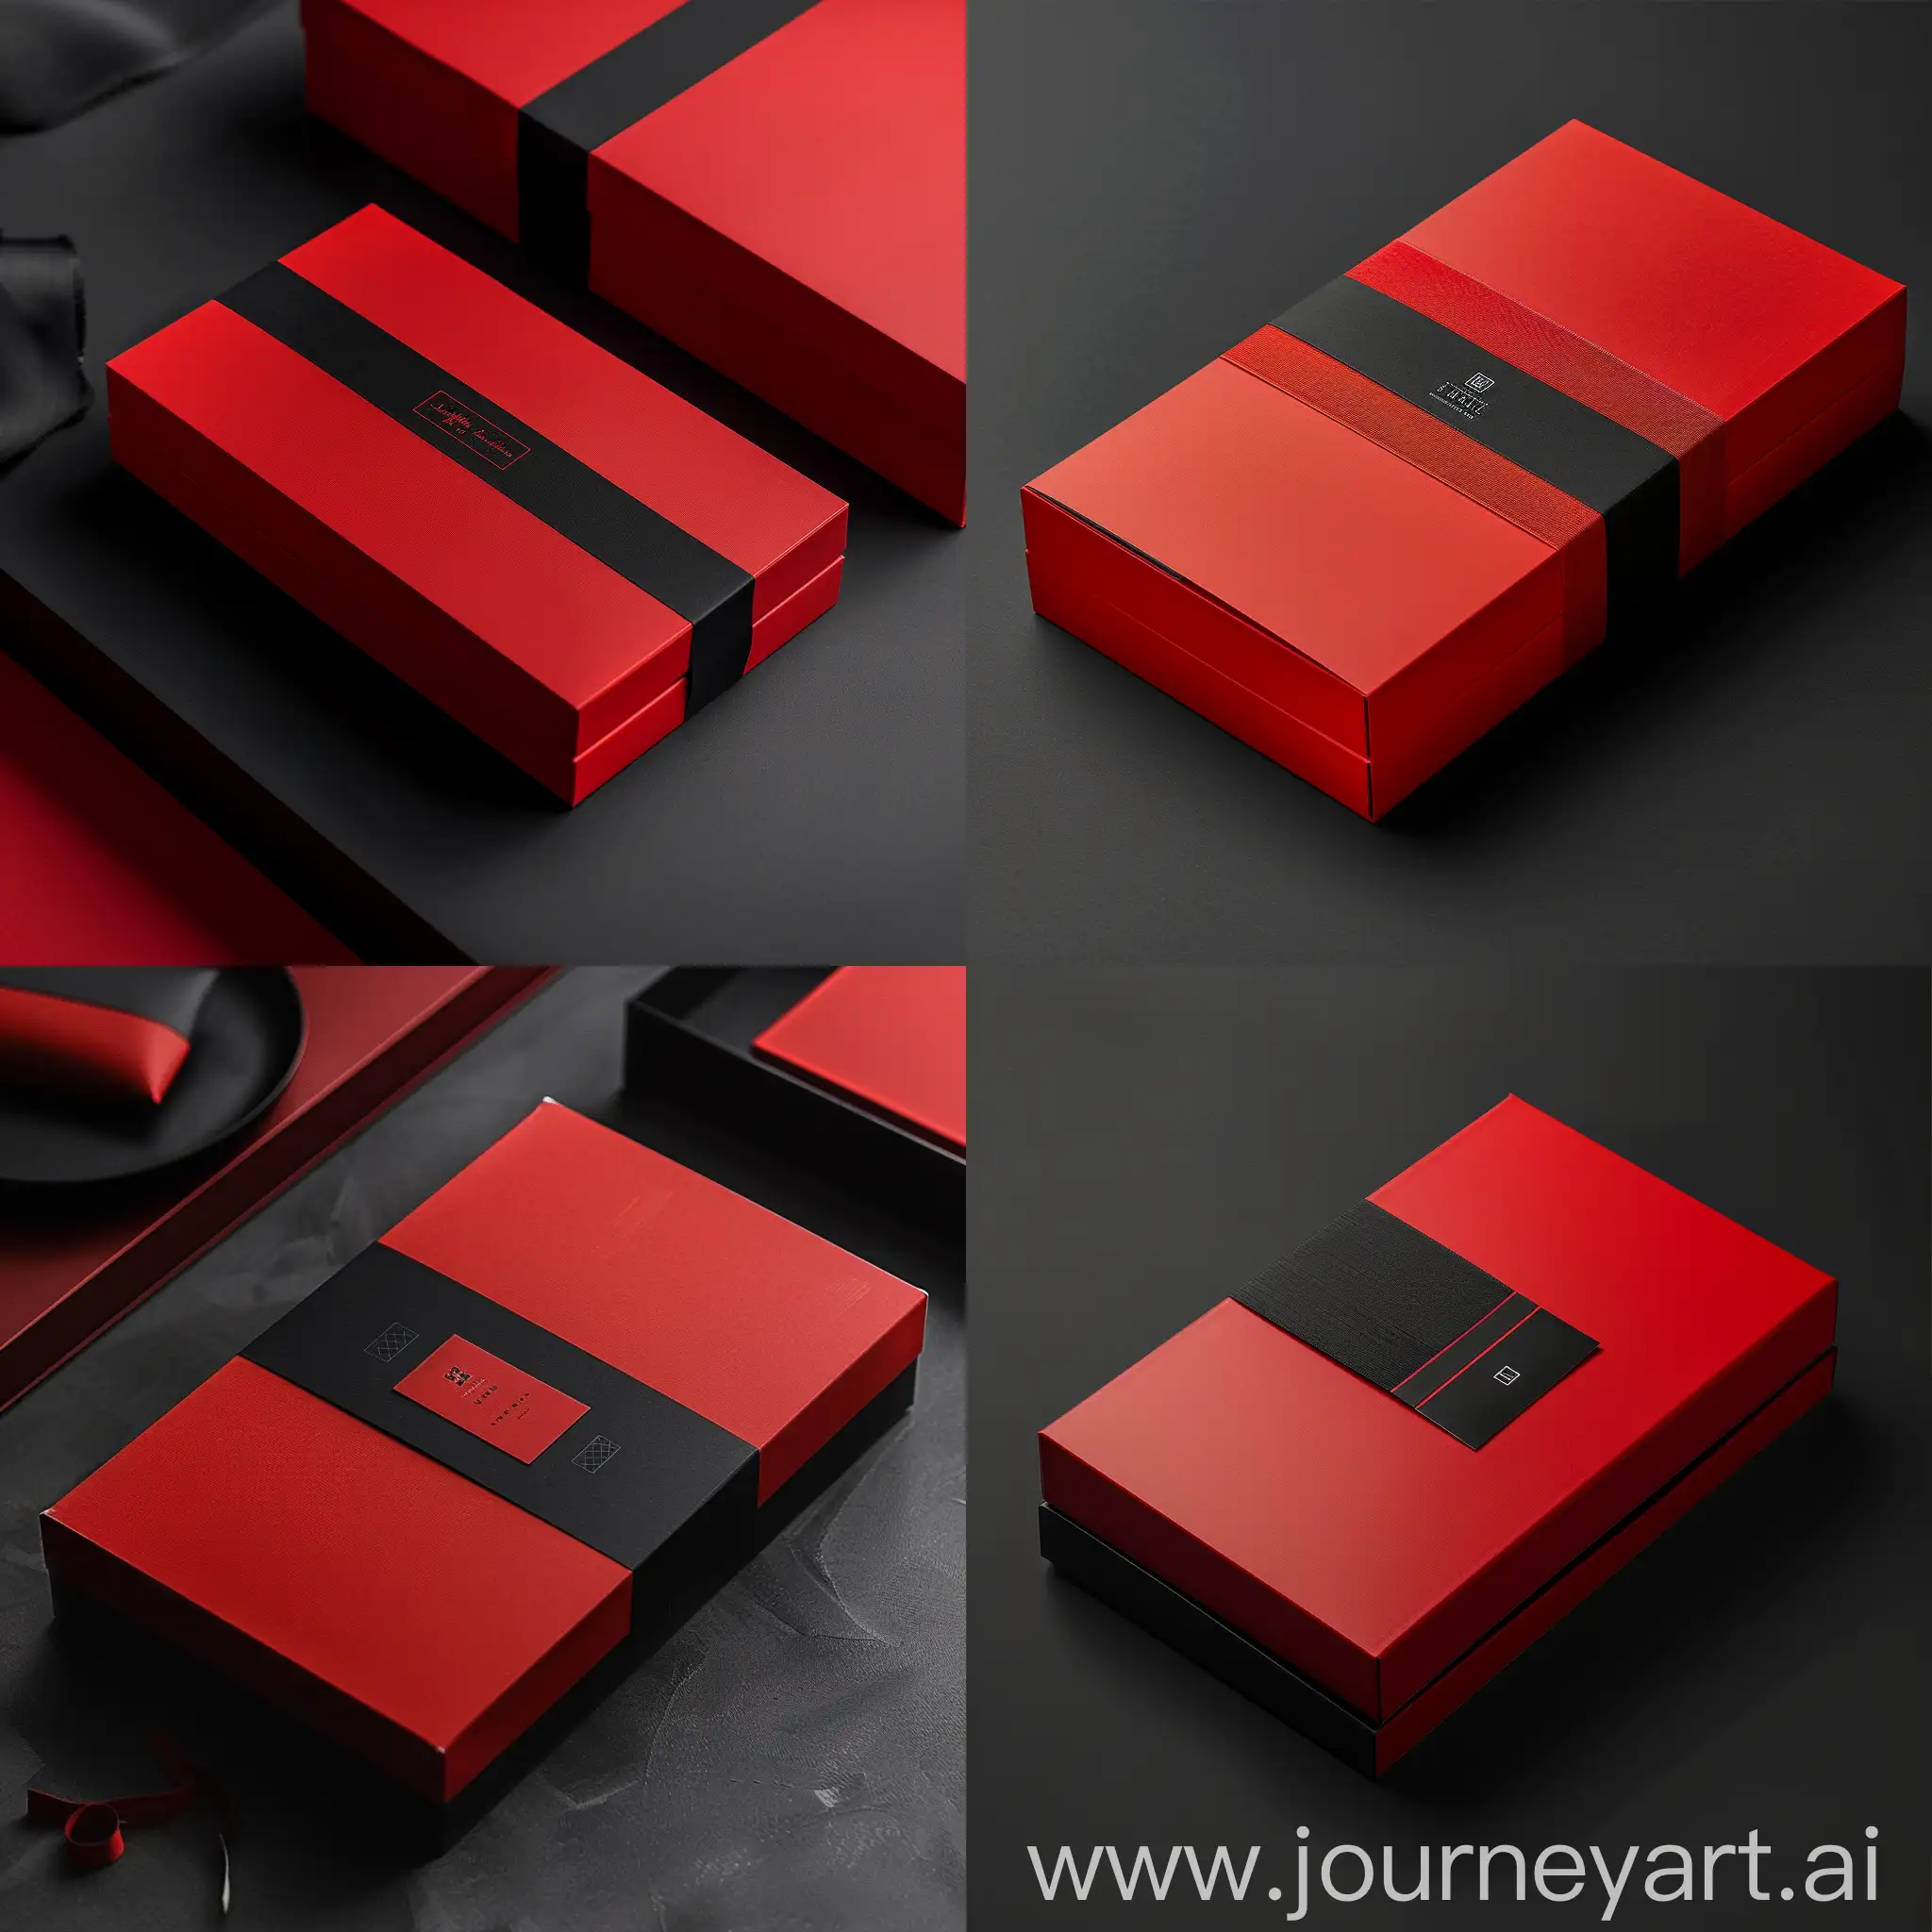 Elegant-Red-and-Black-Packaging-Design